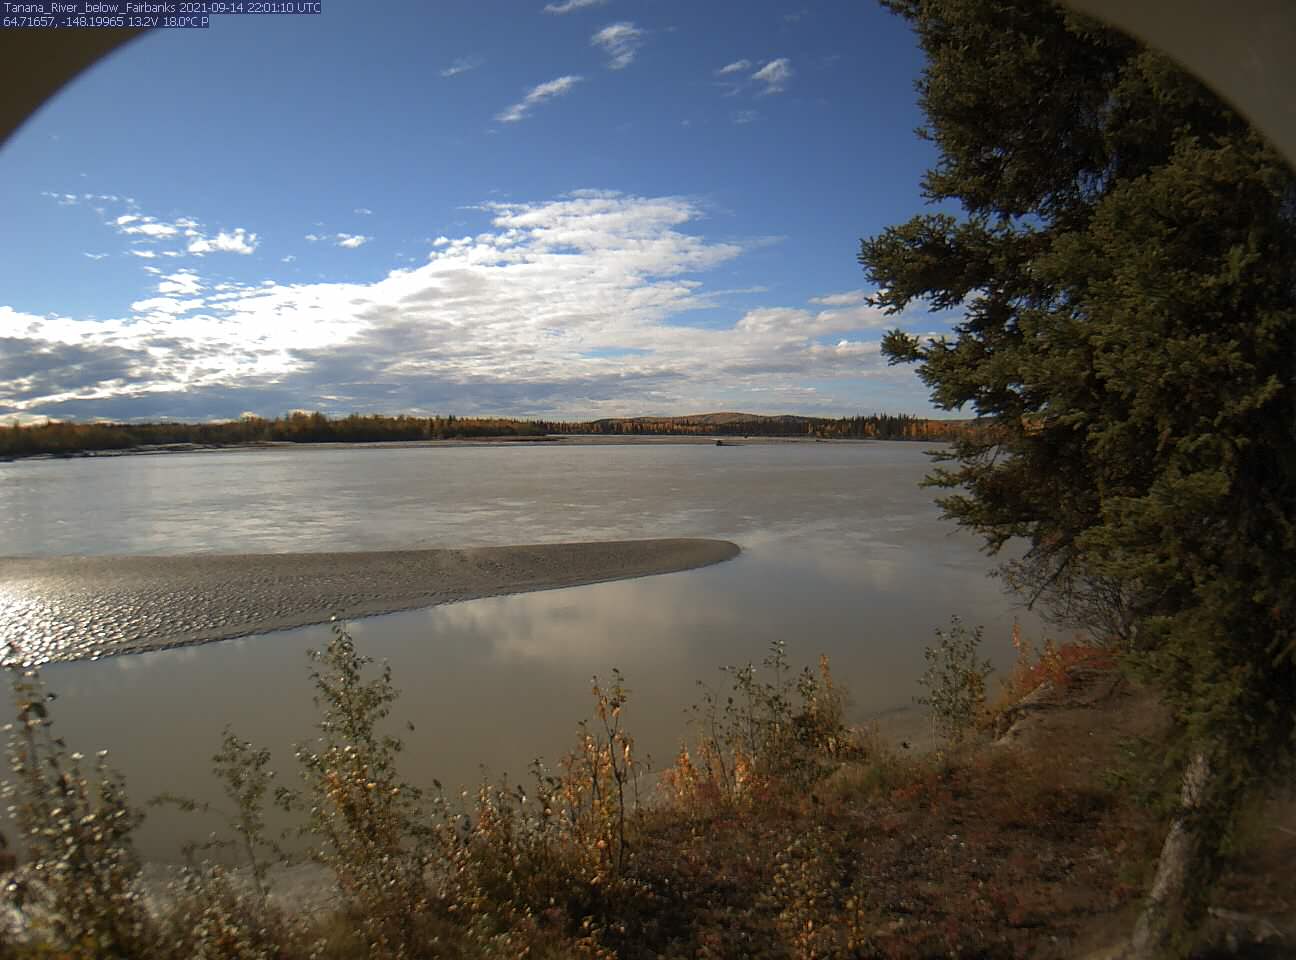 Tanana_River_below_Fairbanks_20210914220112.jpg